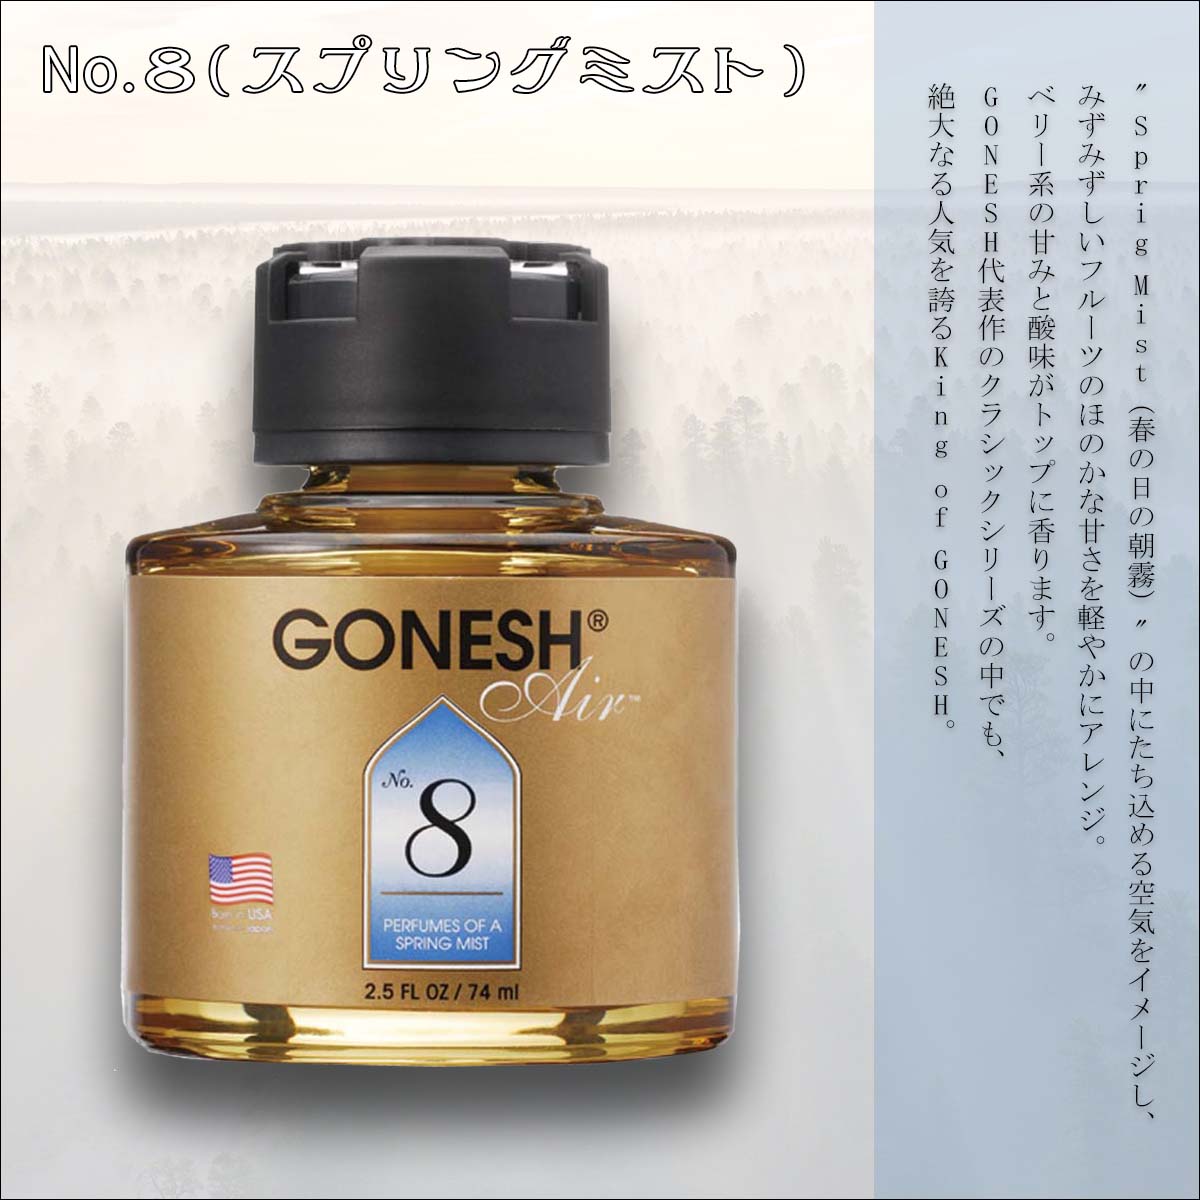 GONESH ガーネッシュ 芳香剤 LIQUID No.8 AIR ルームフレグランス